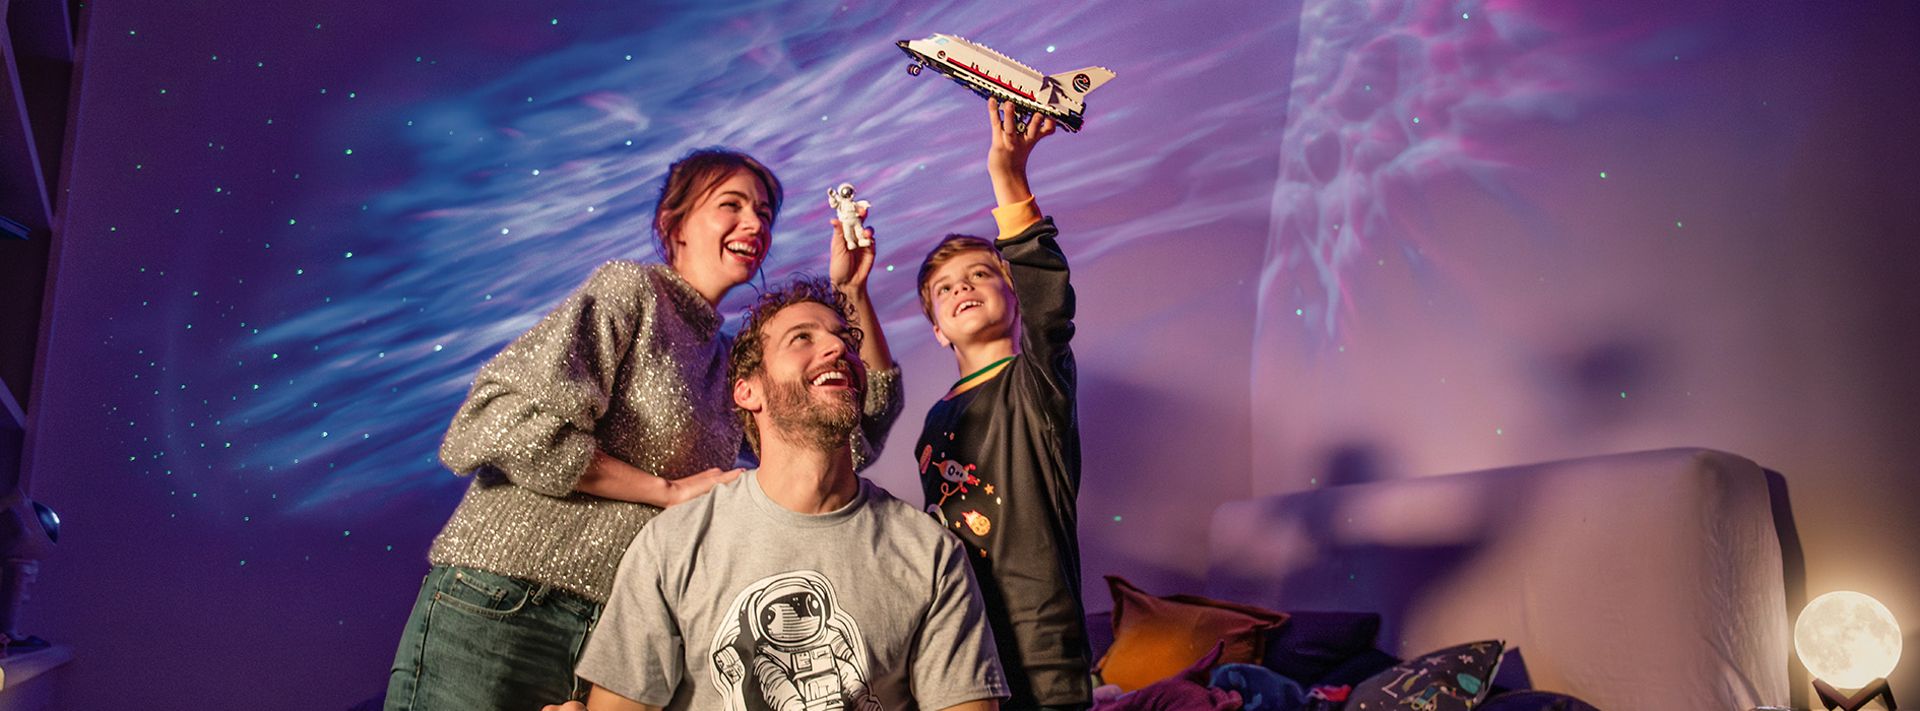 Kinder und Vater spielen mit Spielzeug-Raumschiff